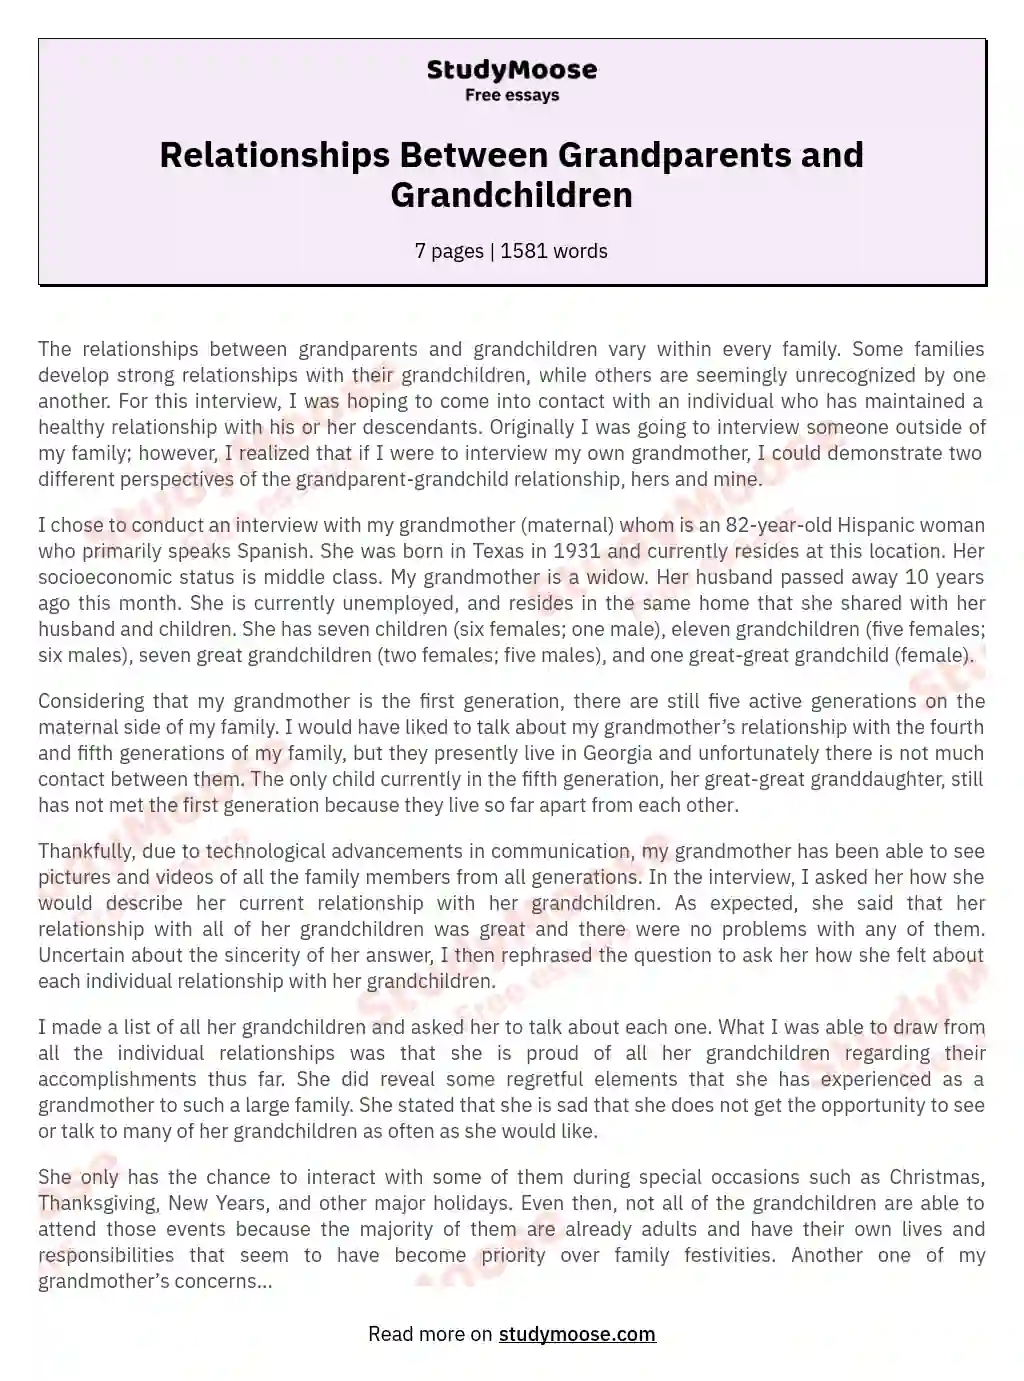 Relationships Between Grandparents and Grandchildren essay